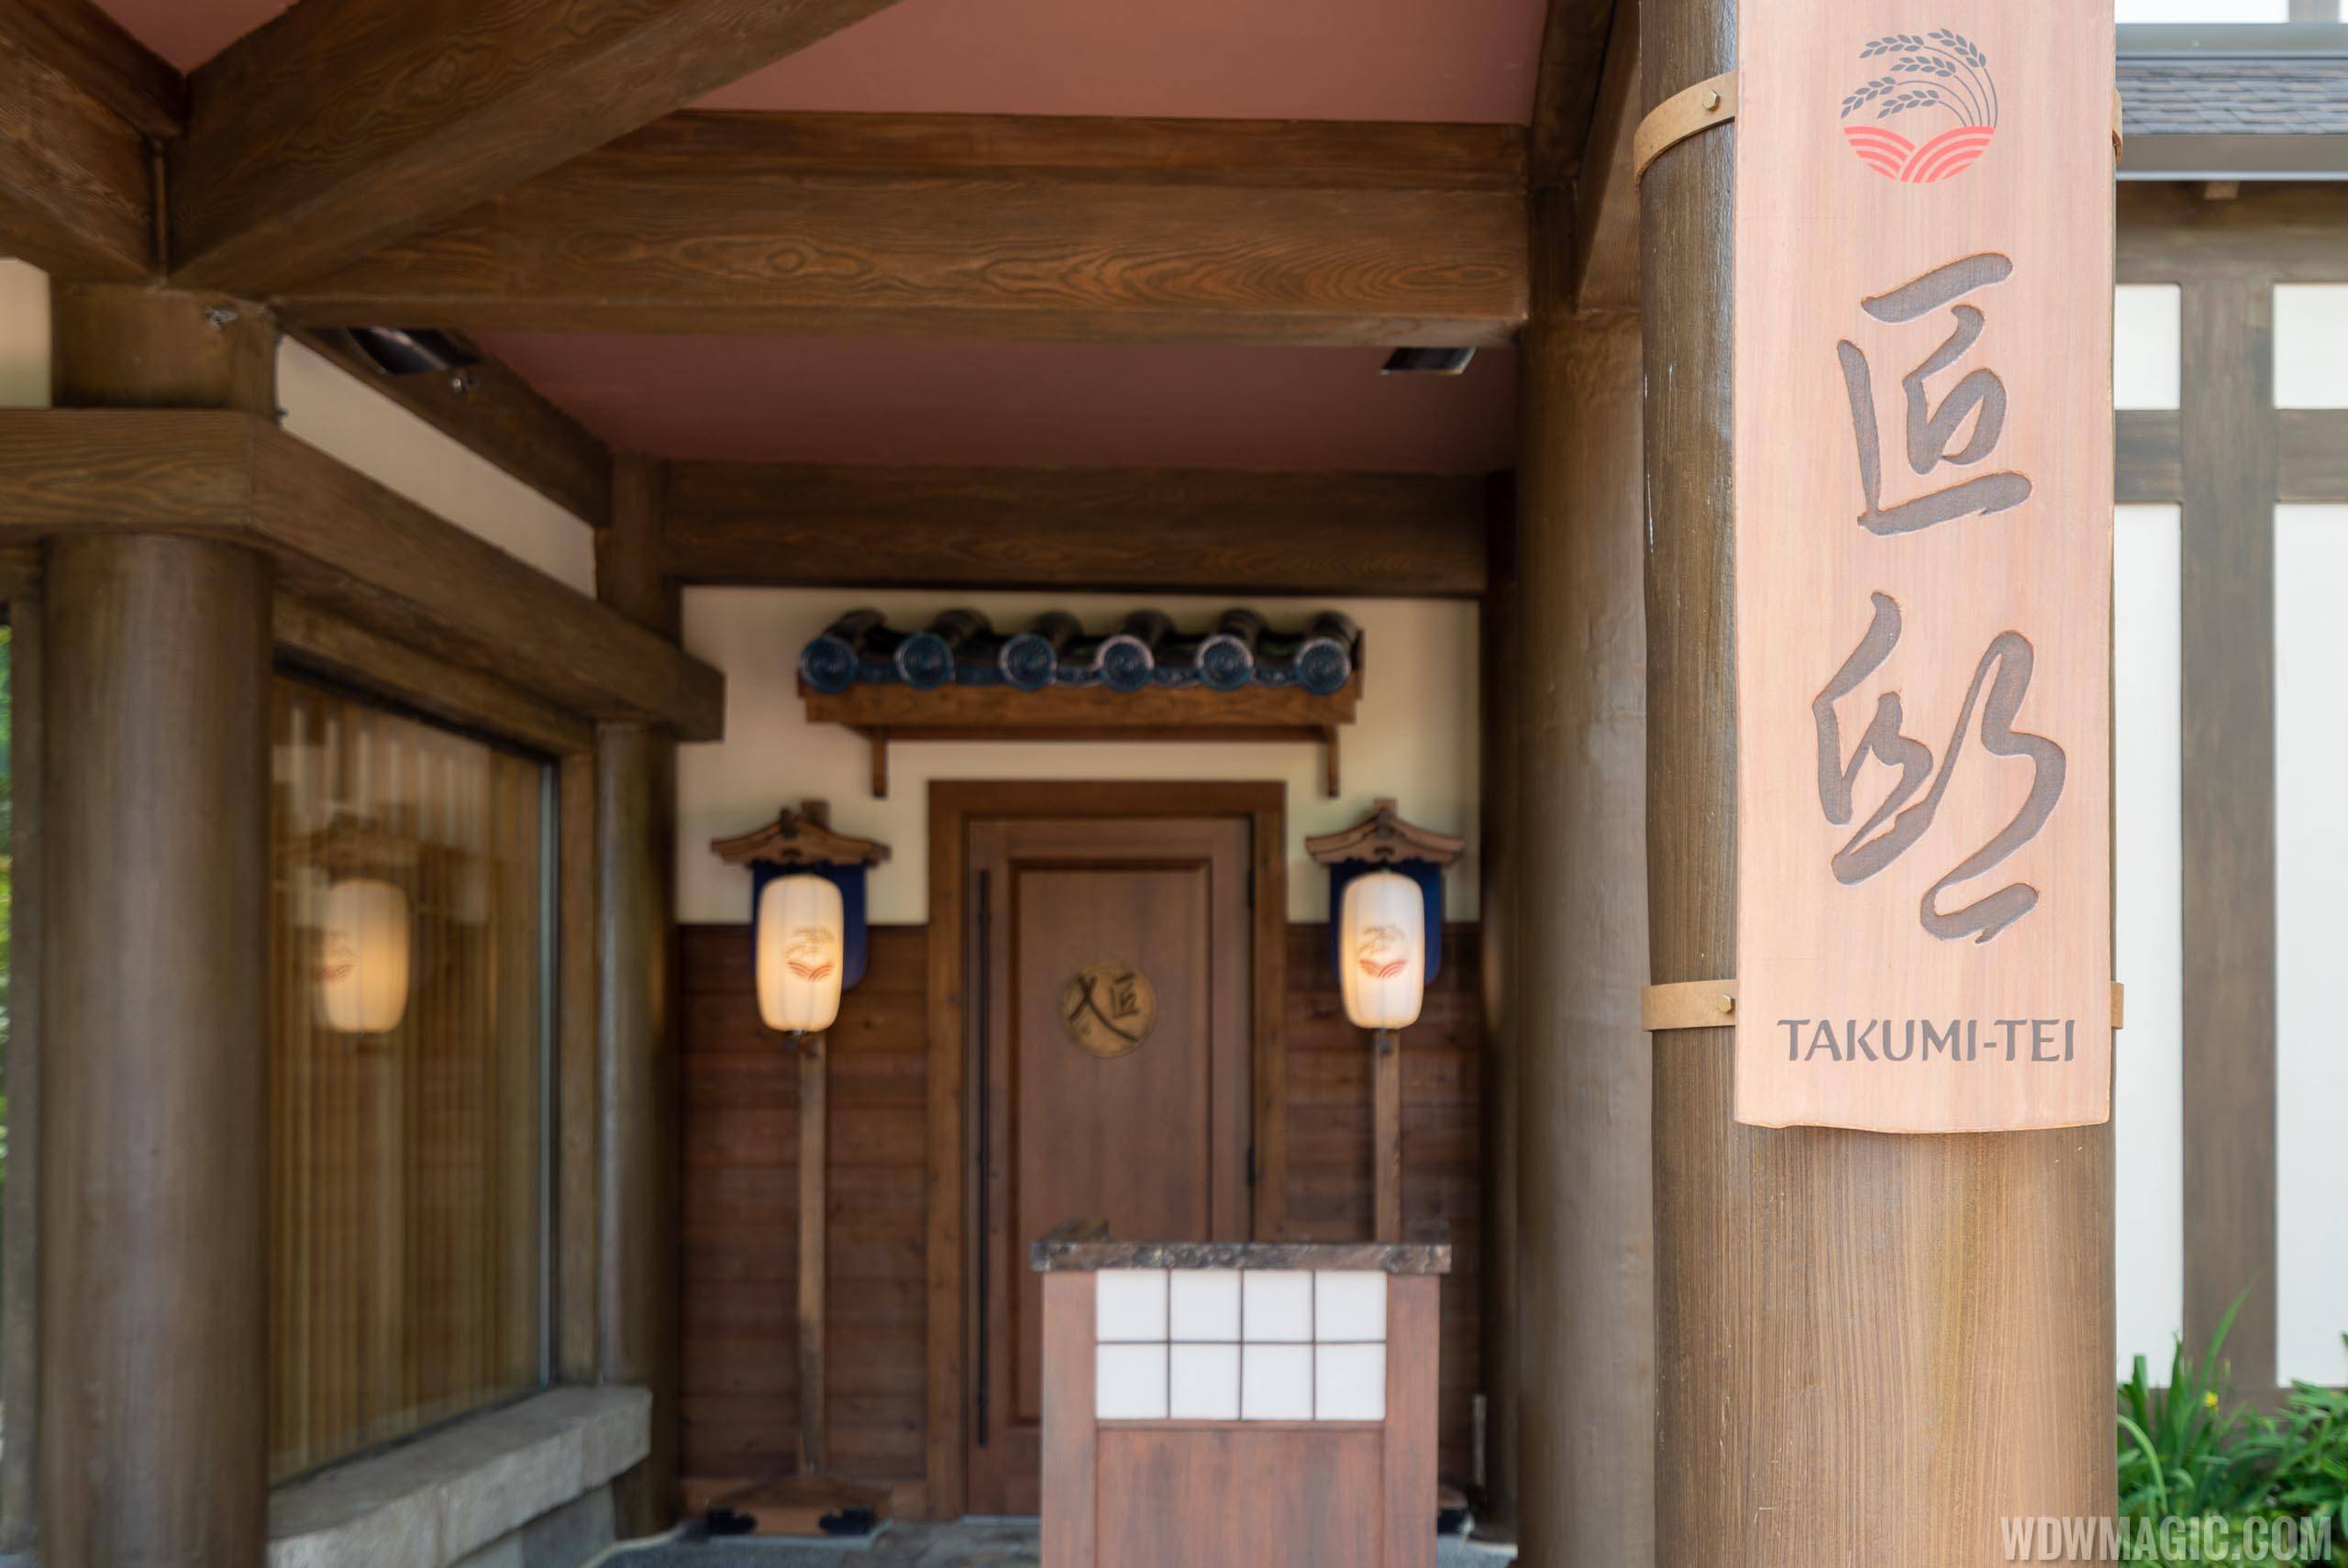 First look at Takumi-Tei's new $250 menu at EPCOT's Japan Pavilion